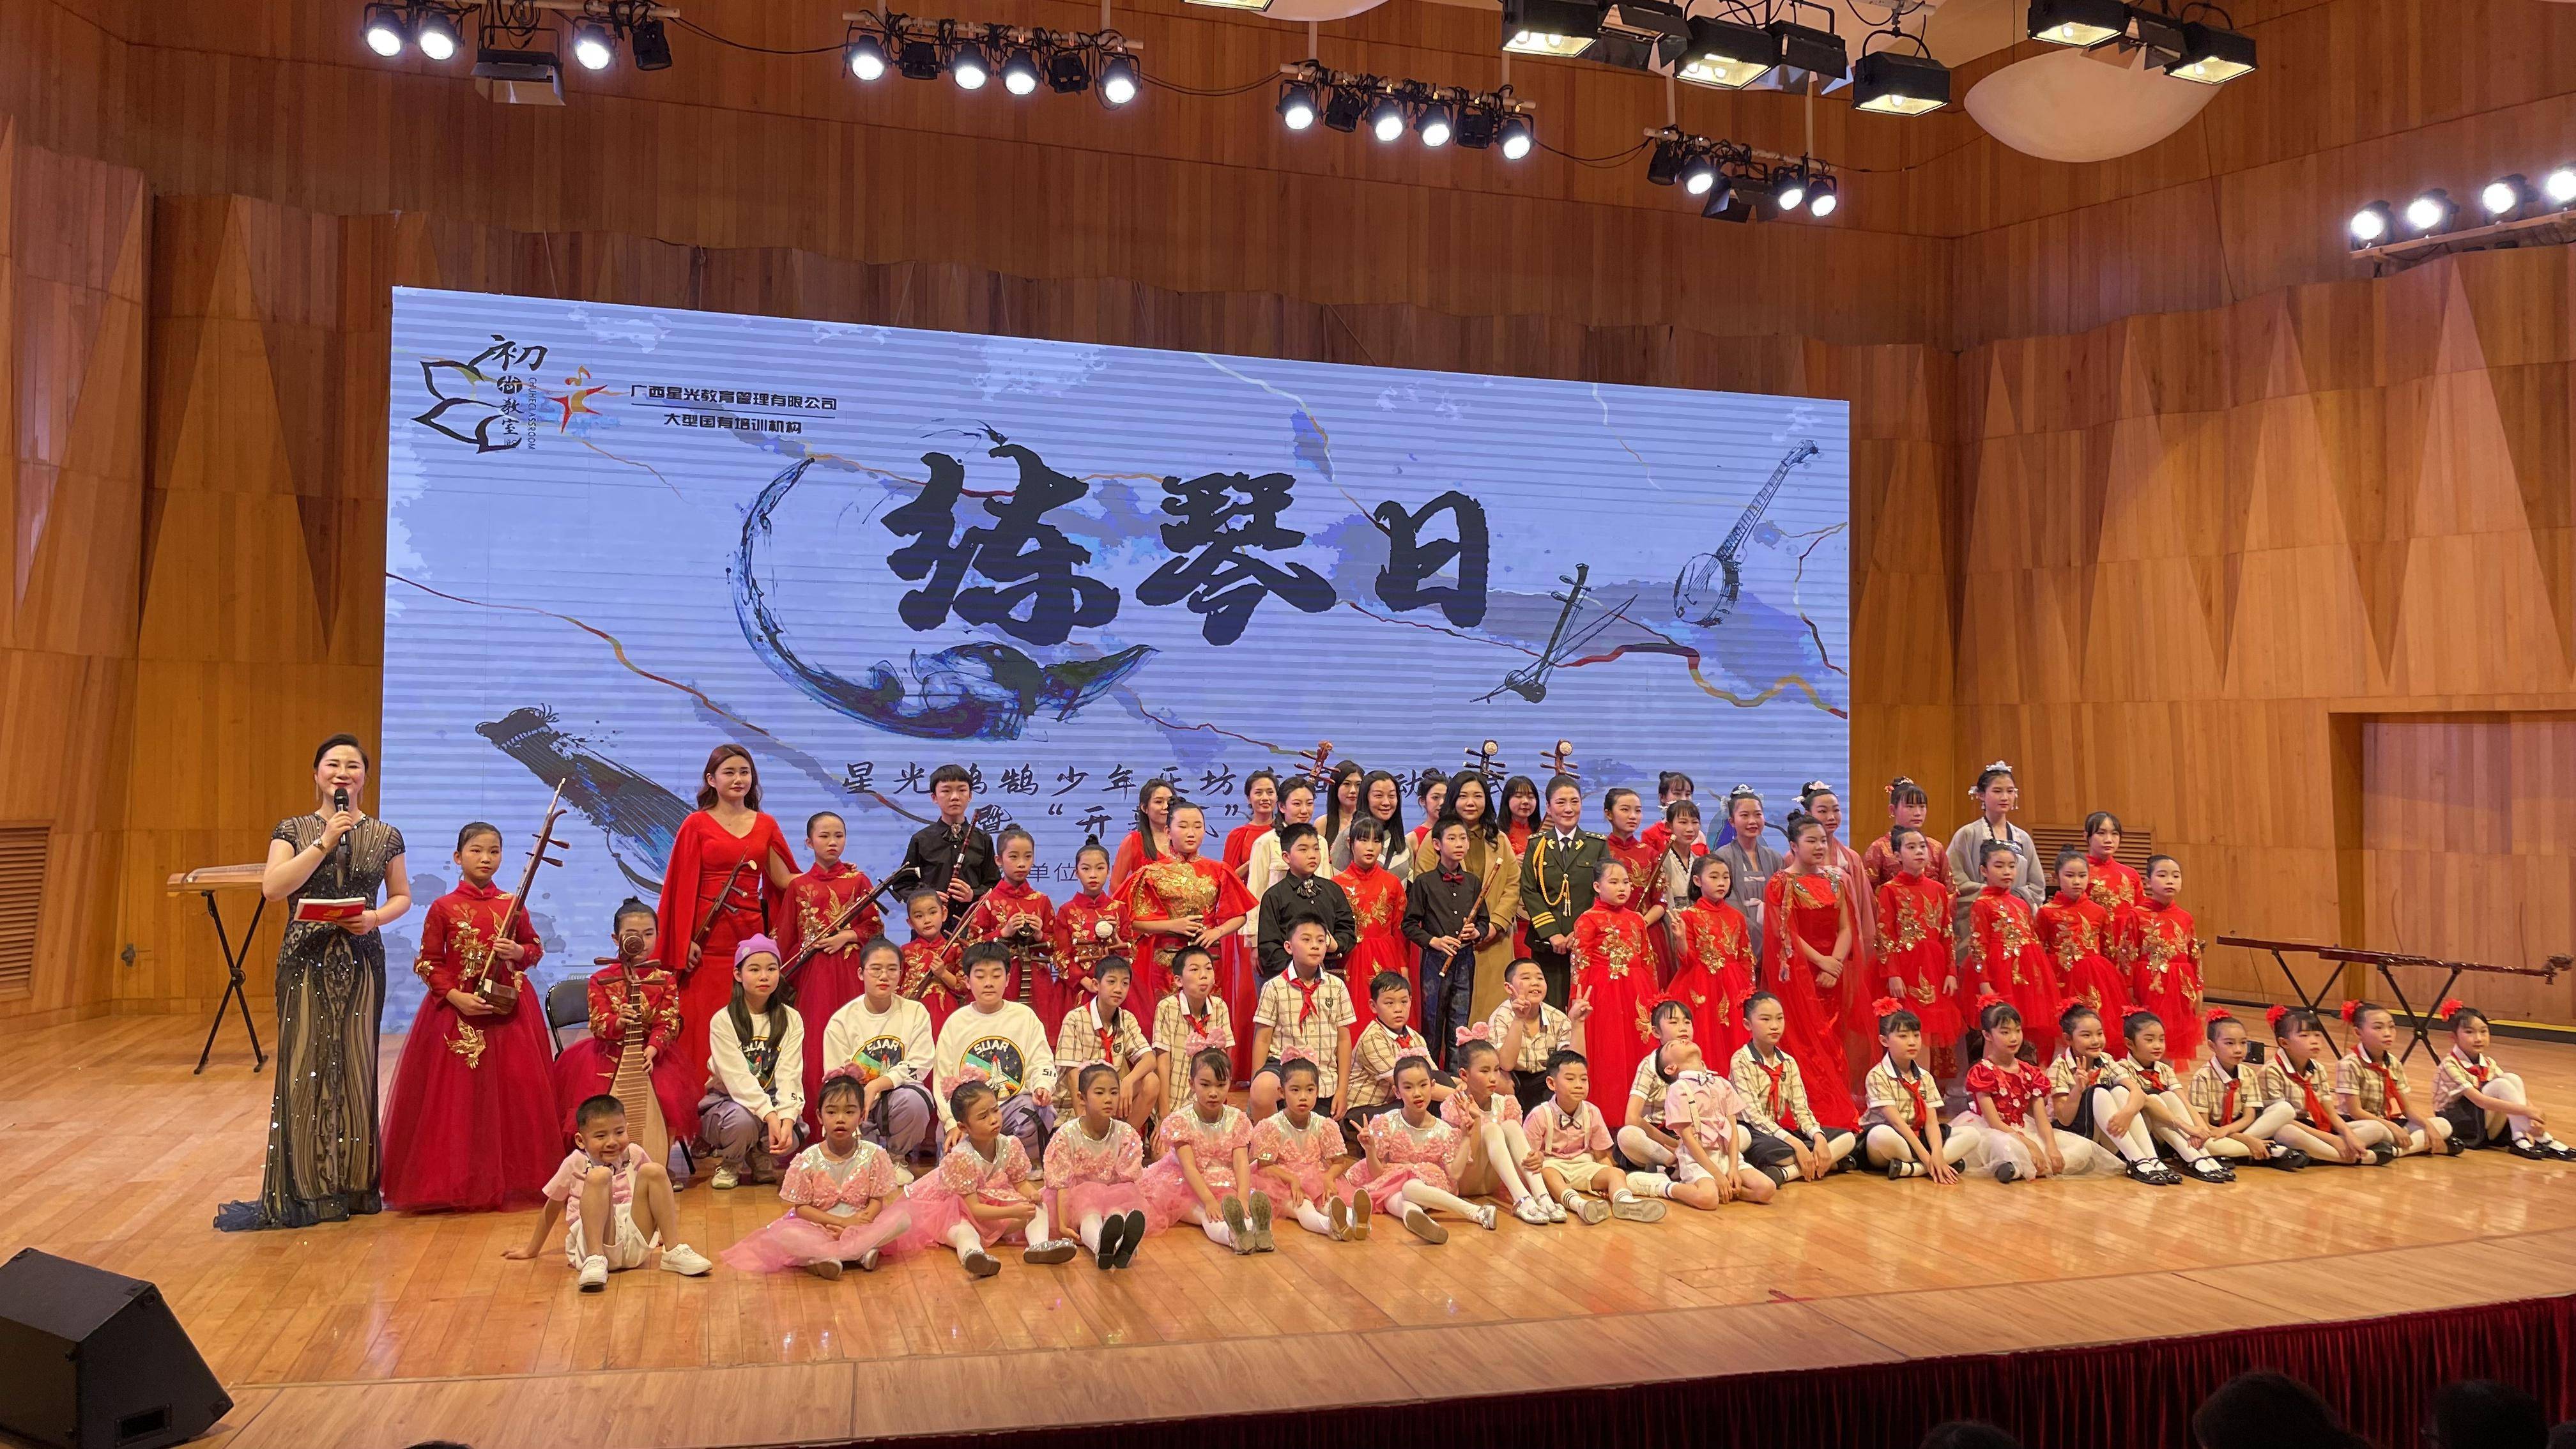 广西演艺集团艺术培训中心携手初荷教室打造星光鸿鹄少年乐坊